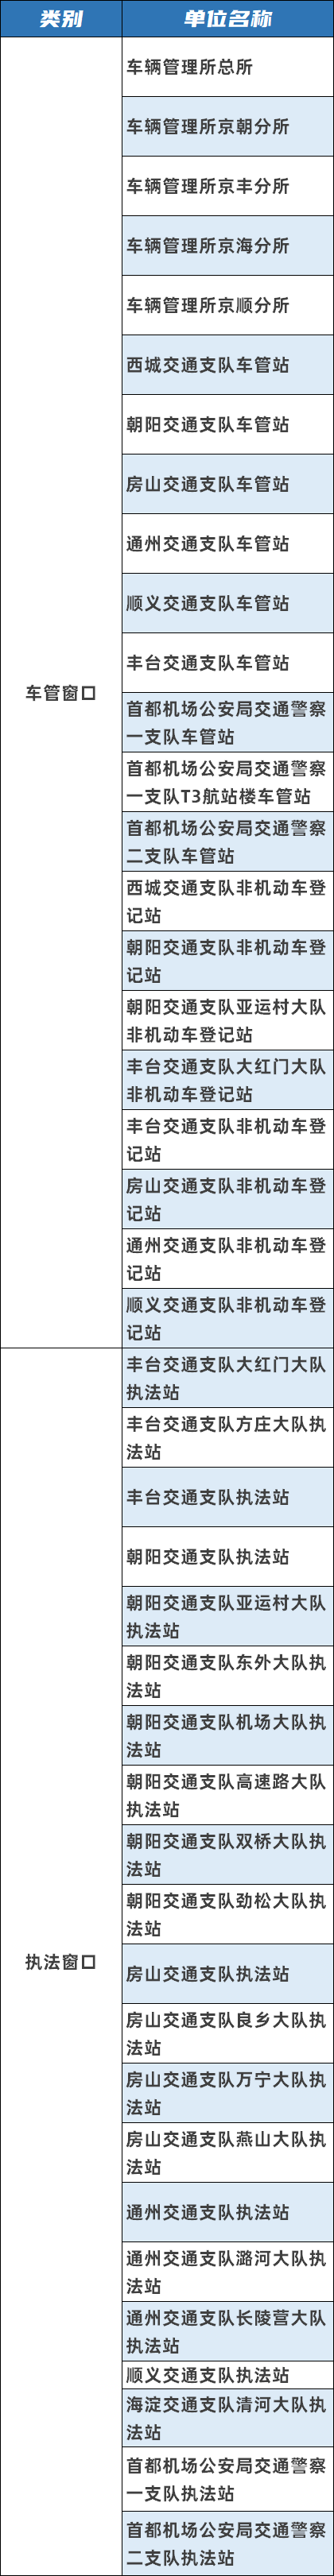 外交部：中方不能同意台湾地区参加今年世卫大会 - PHL63t - PeraPlay.Org 百度热点快讯